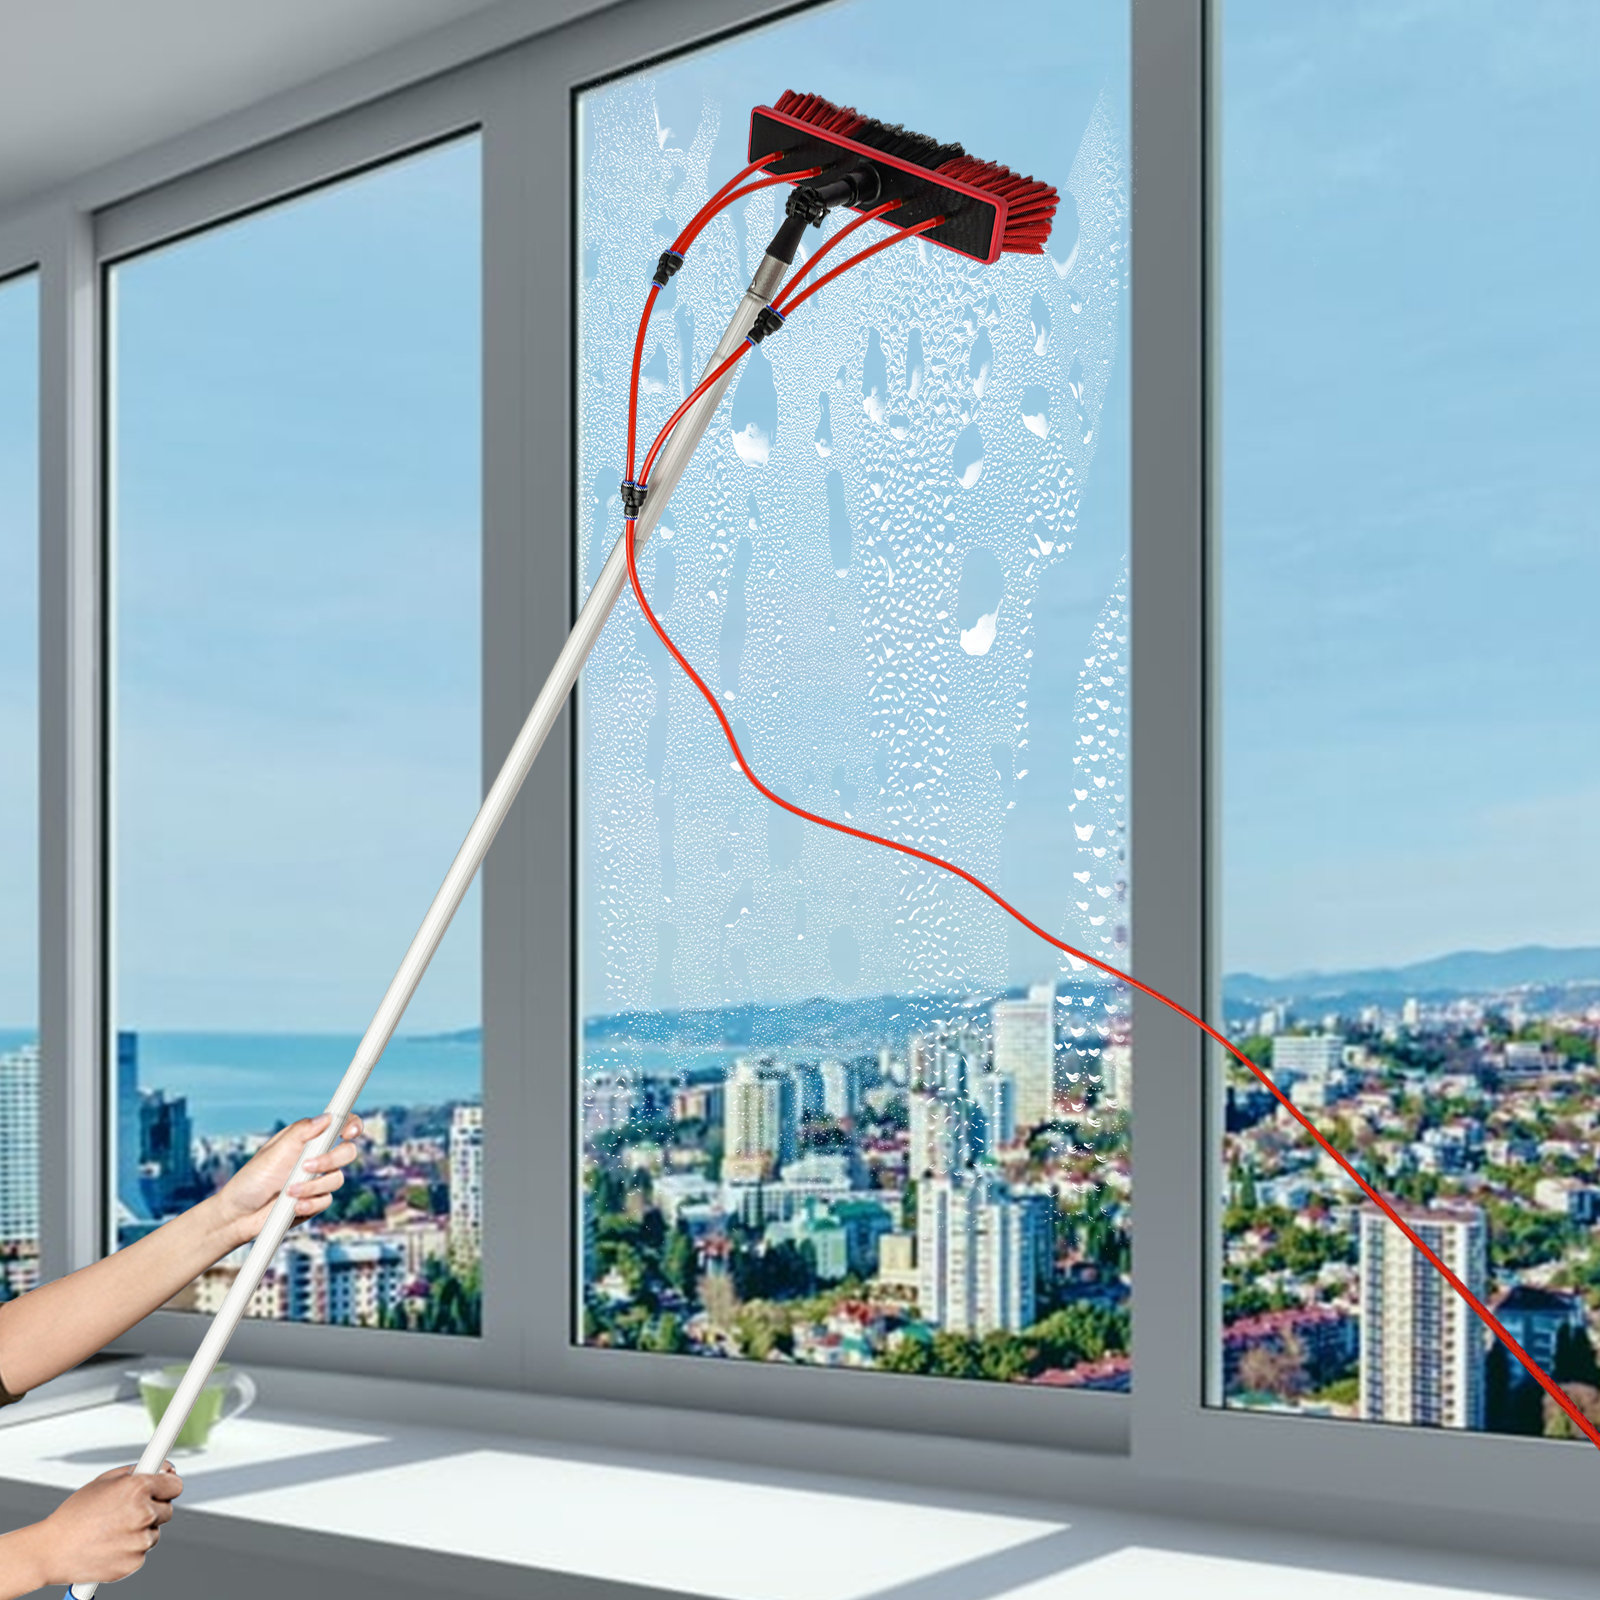 JOYDING Window Washing Kit Cleaning Brush, Water Fed Pole Kit